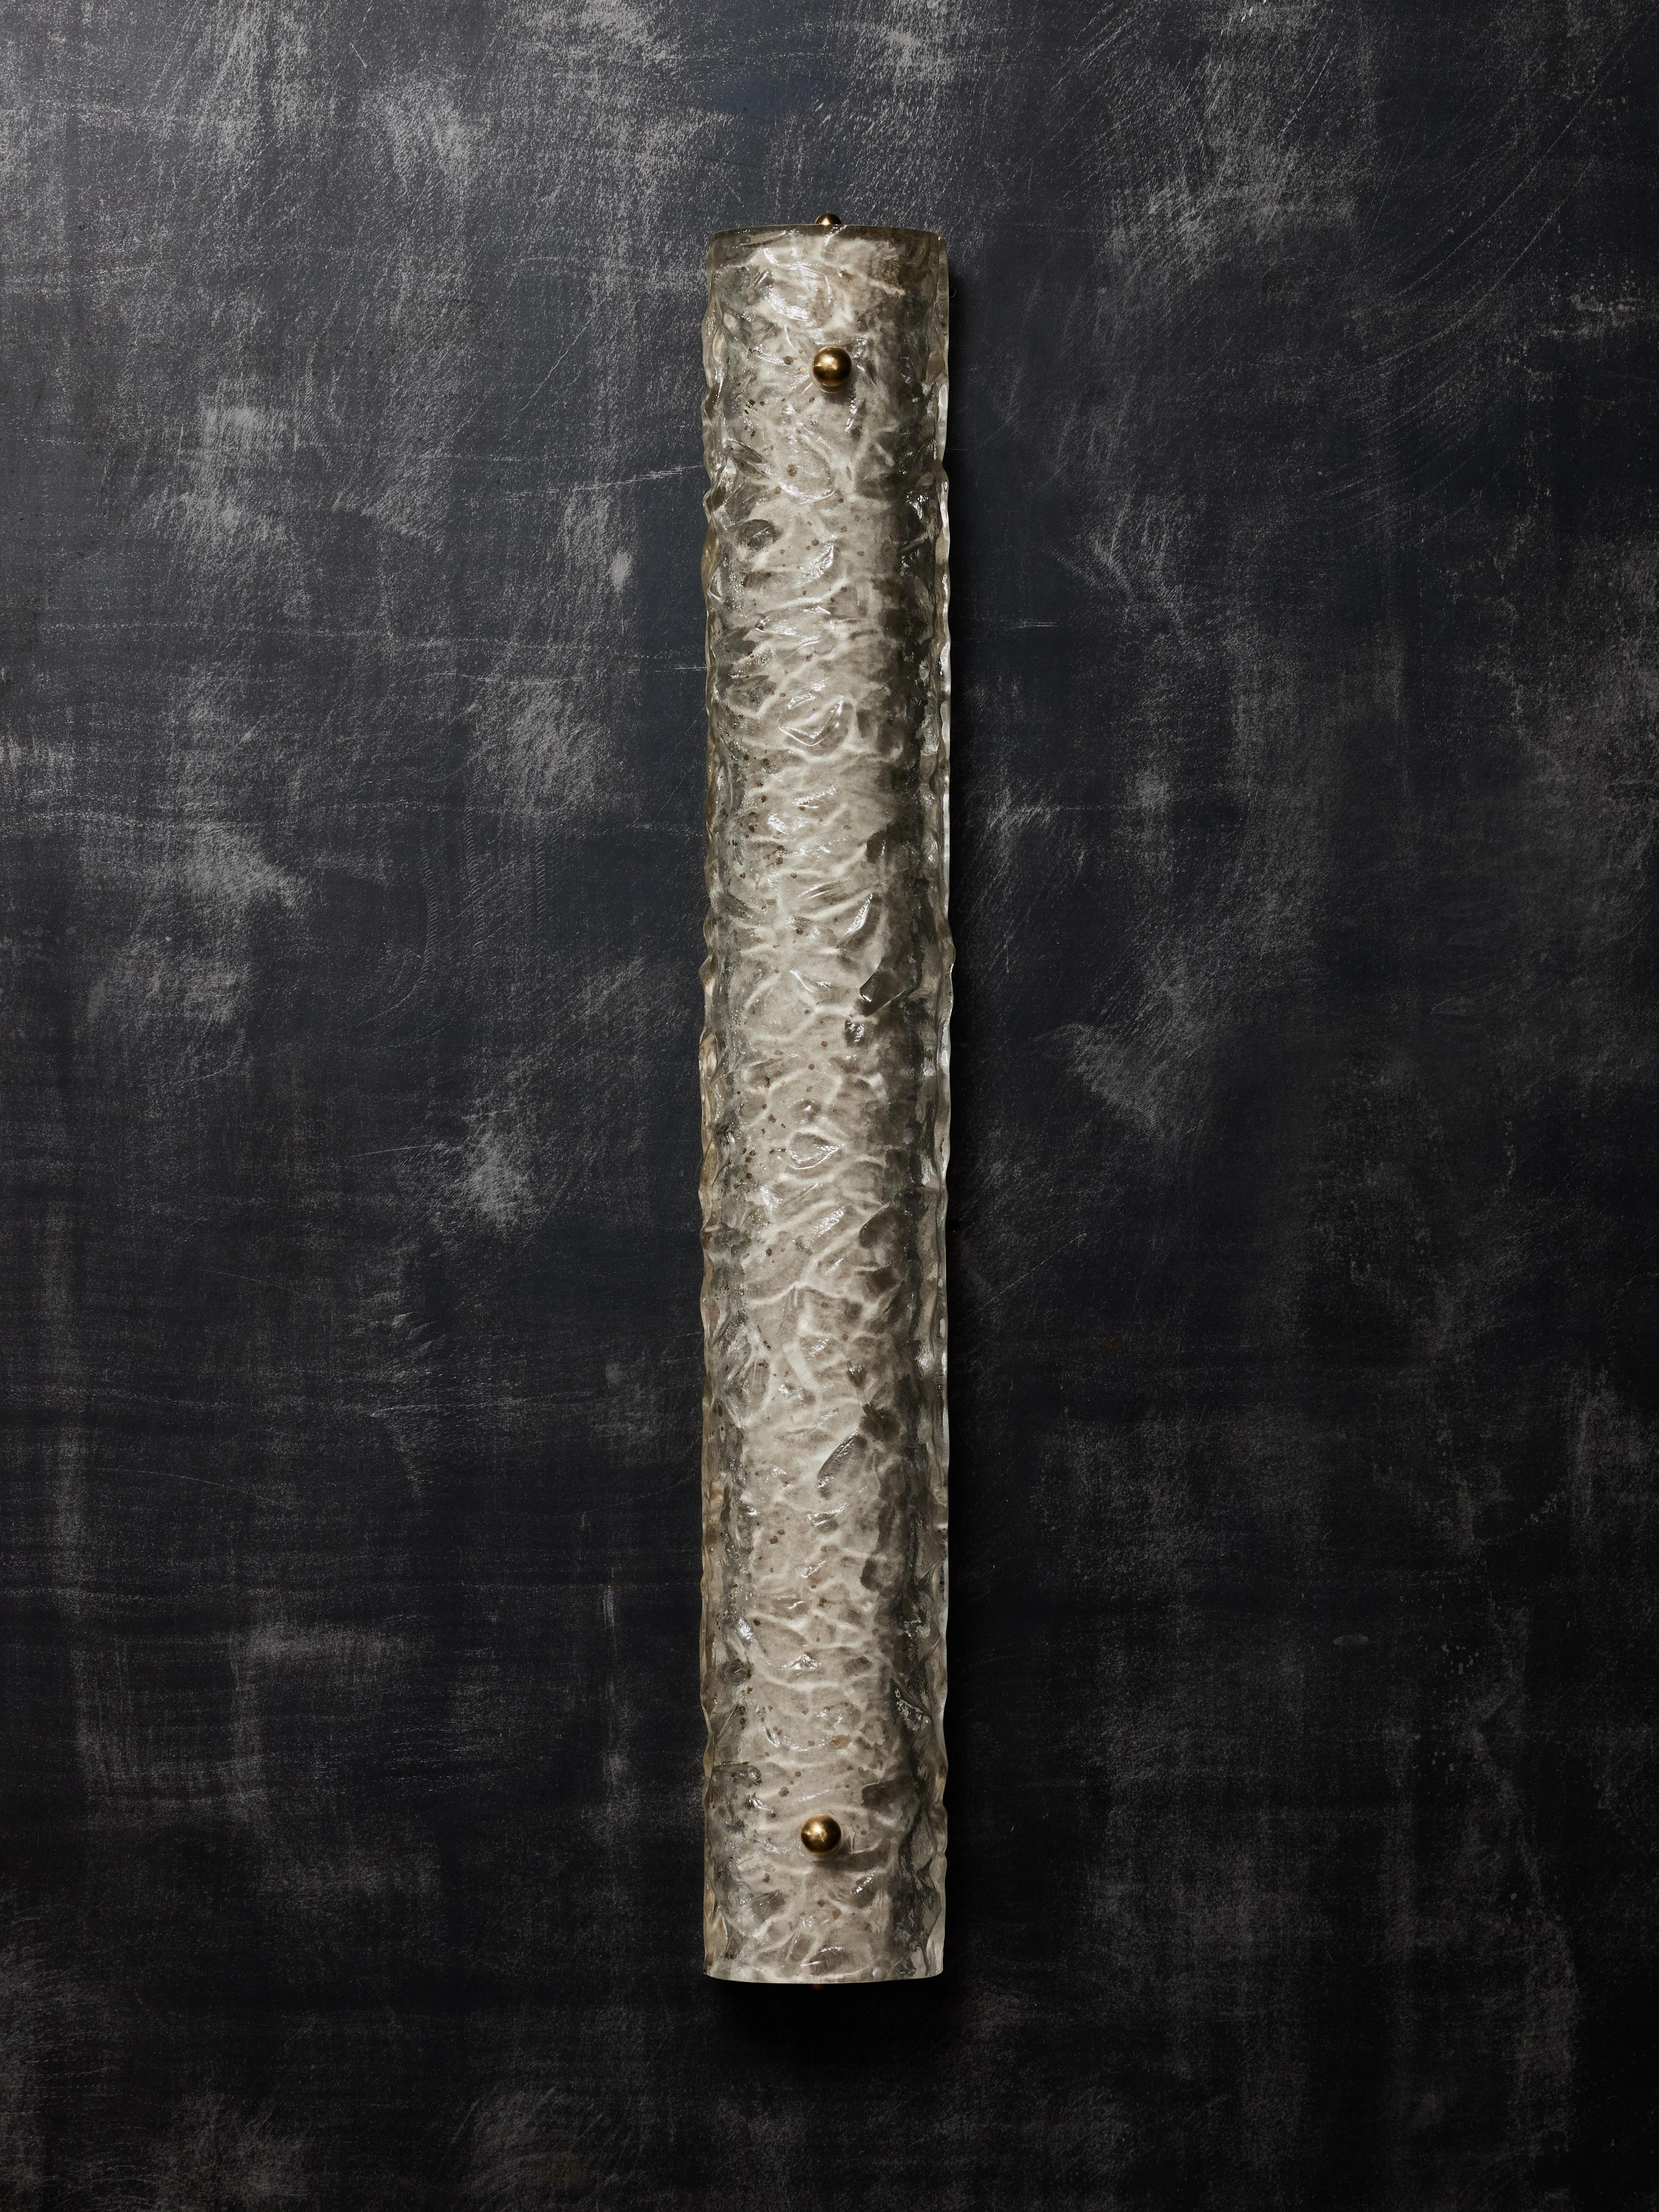 Wandleuchter aus einer Messingplatte, die mit einem gewölbten Murano-Glasstück bedeckt ist, das mit zwei Zierschrauben aus Messing befestigt wird. Der Murano ist strukturiert und hellgrau getönt mit goldenen Reflexen. Drei Lichtquellen pro Leuchte.